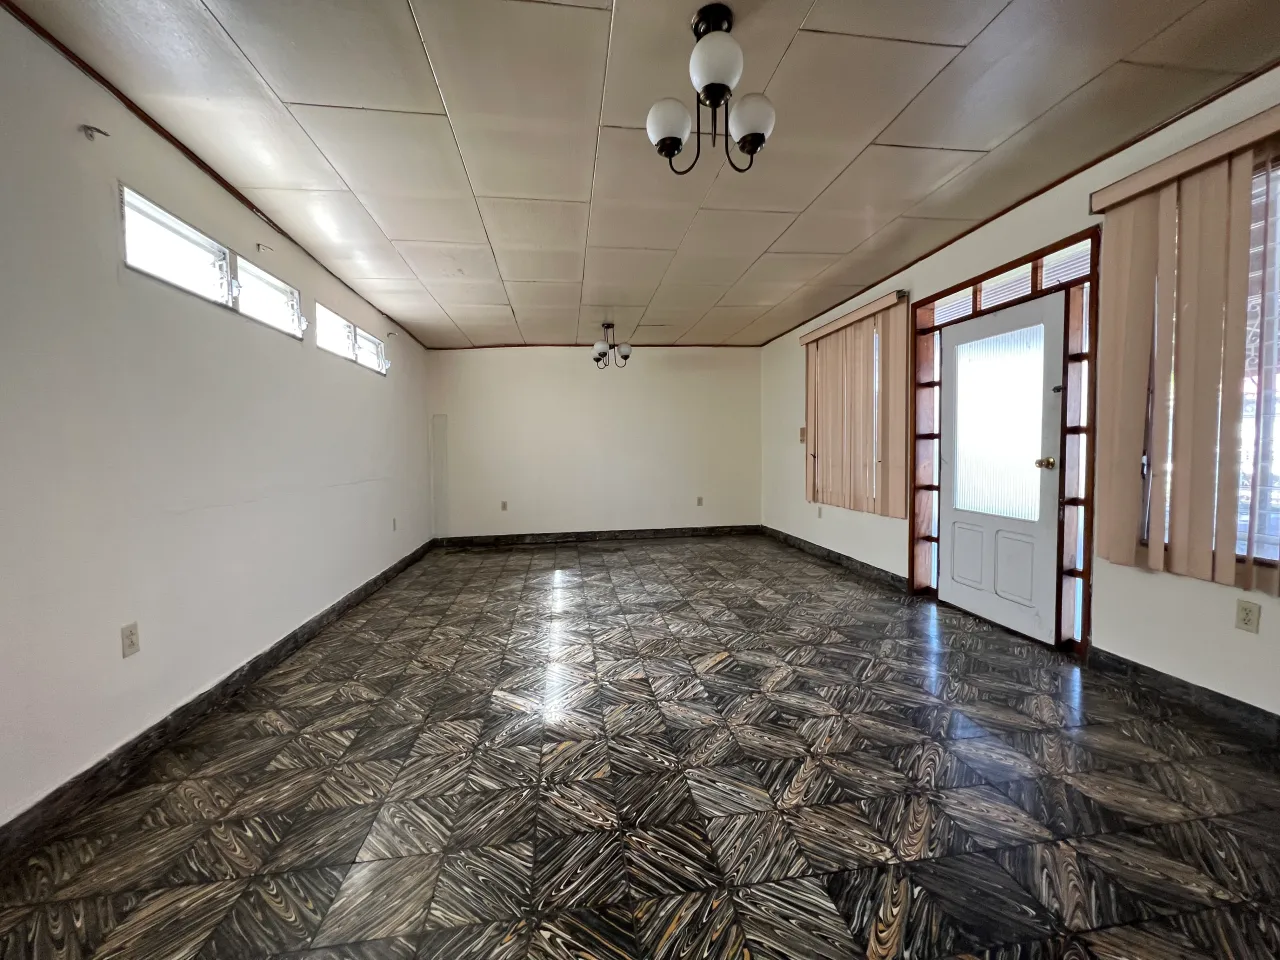 Habitación amplia con piso de ceramica oscura, paredes color beige con techo de tabla yeso junto a una puerta con acceso a la terrza